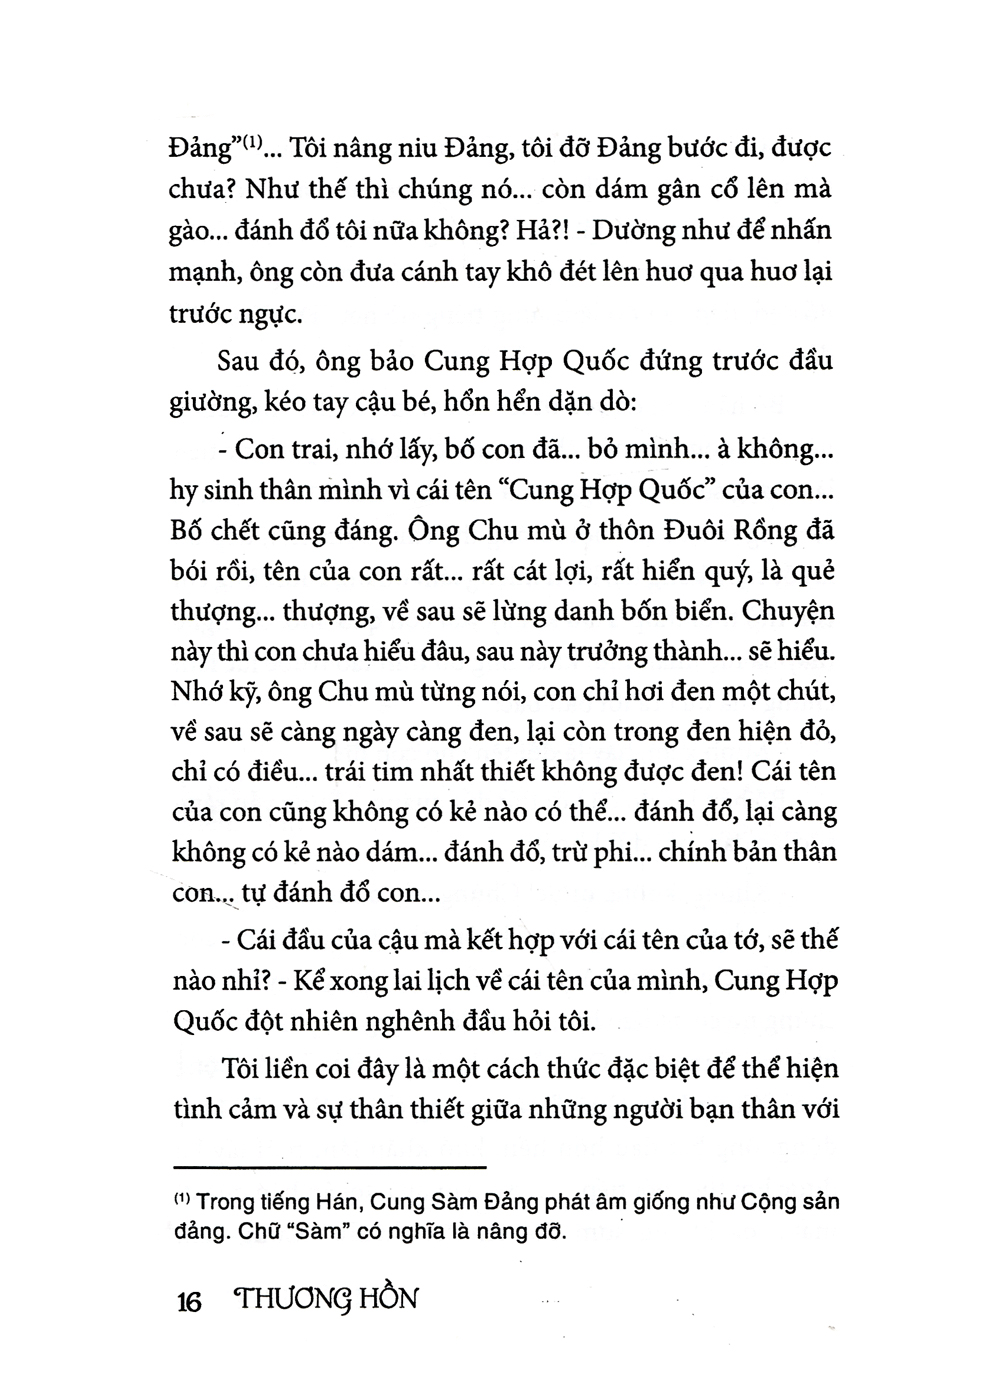 Thương Hồn PDF